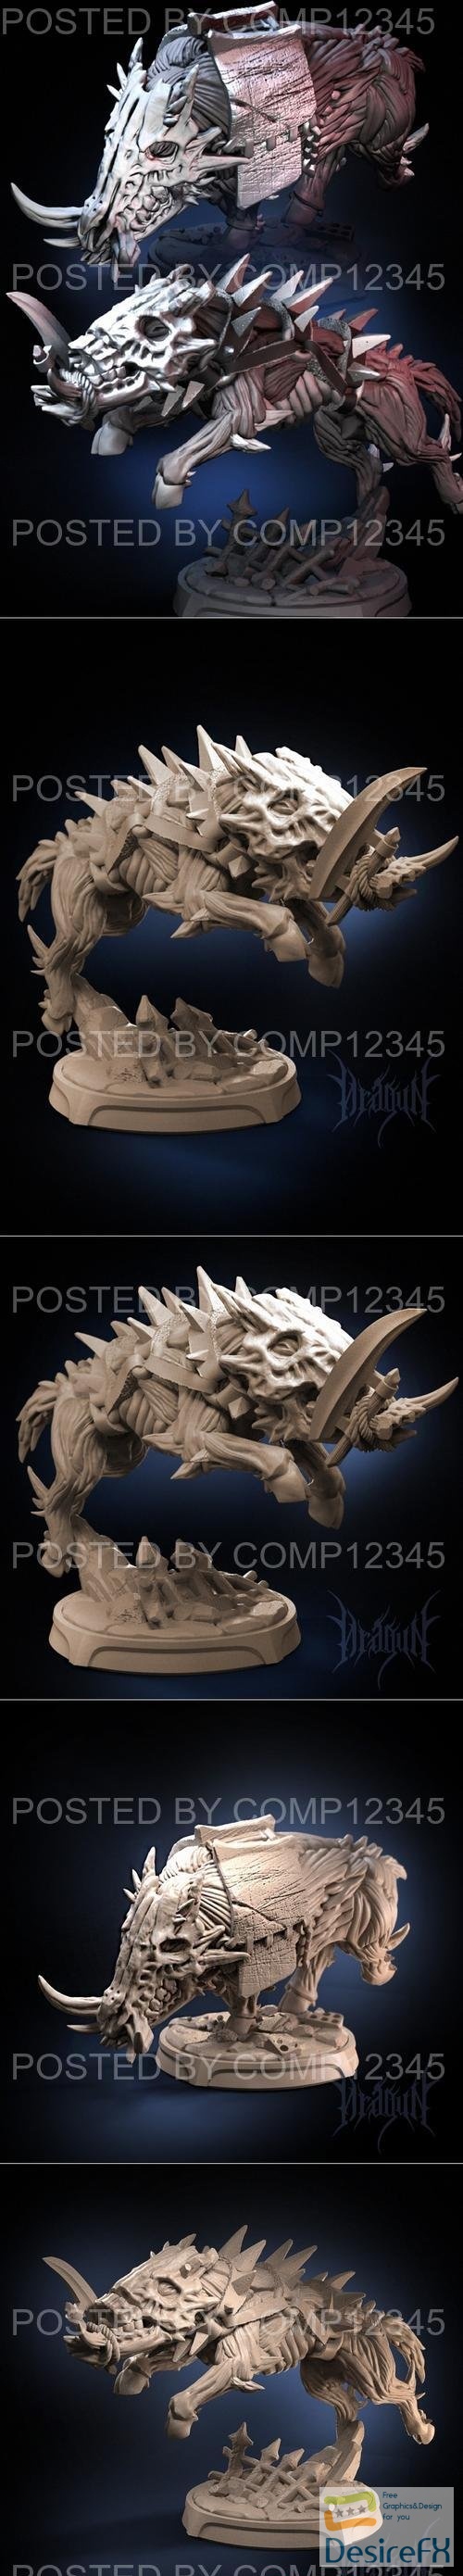 Dragun Studios - Warthogs 3D Print